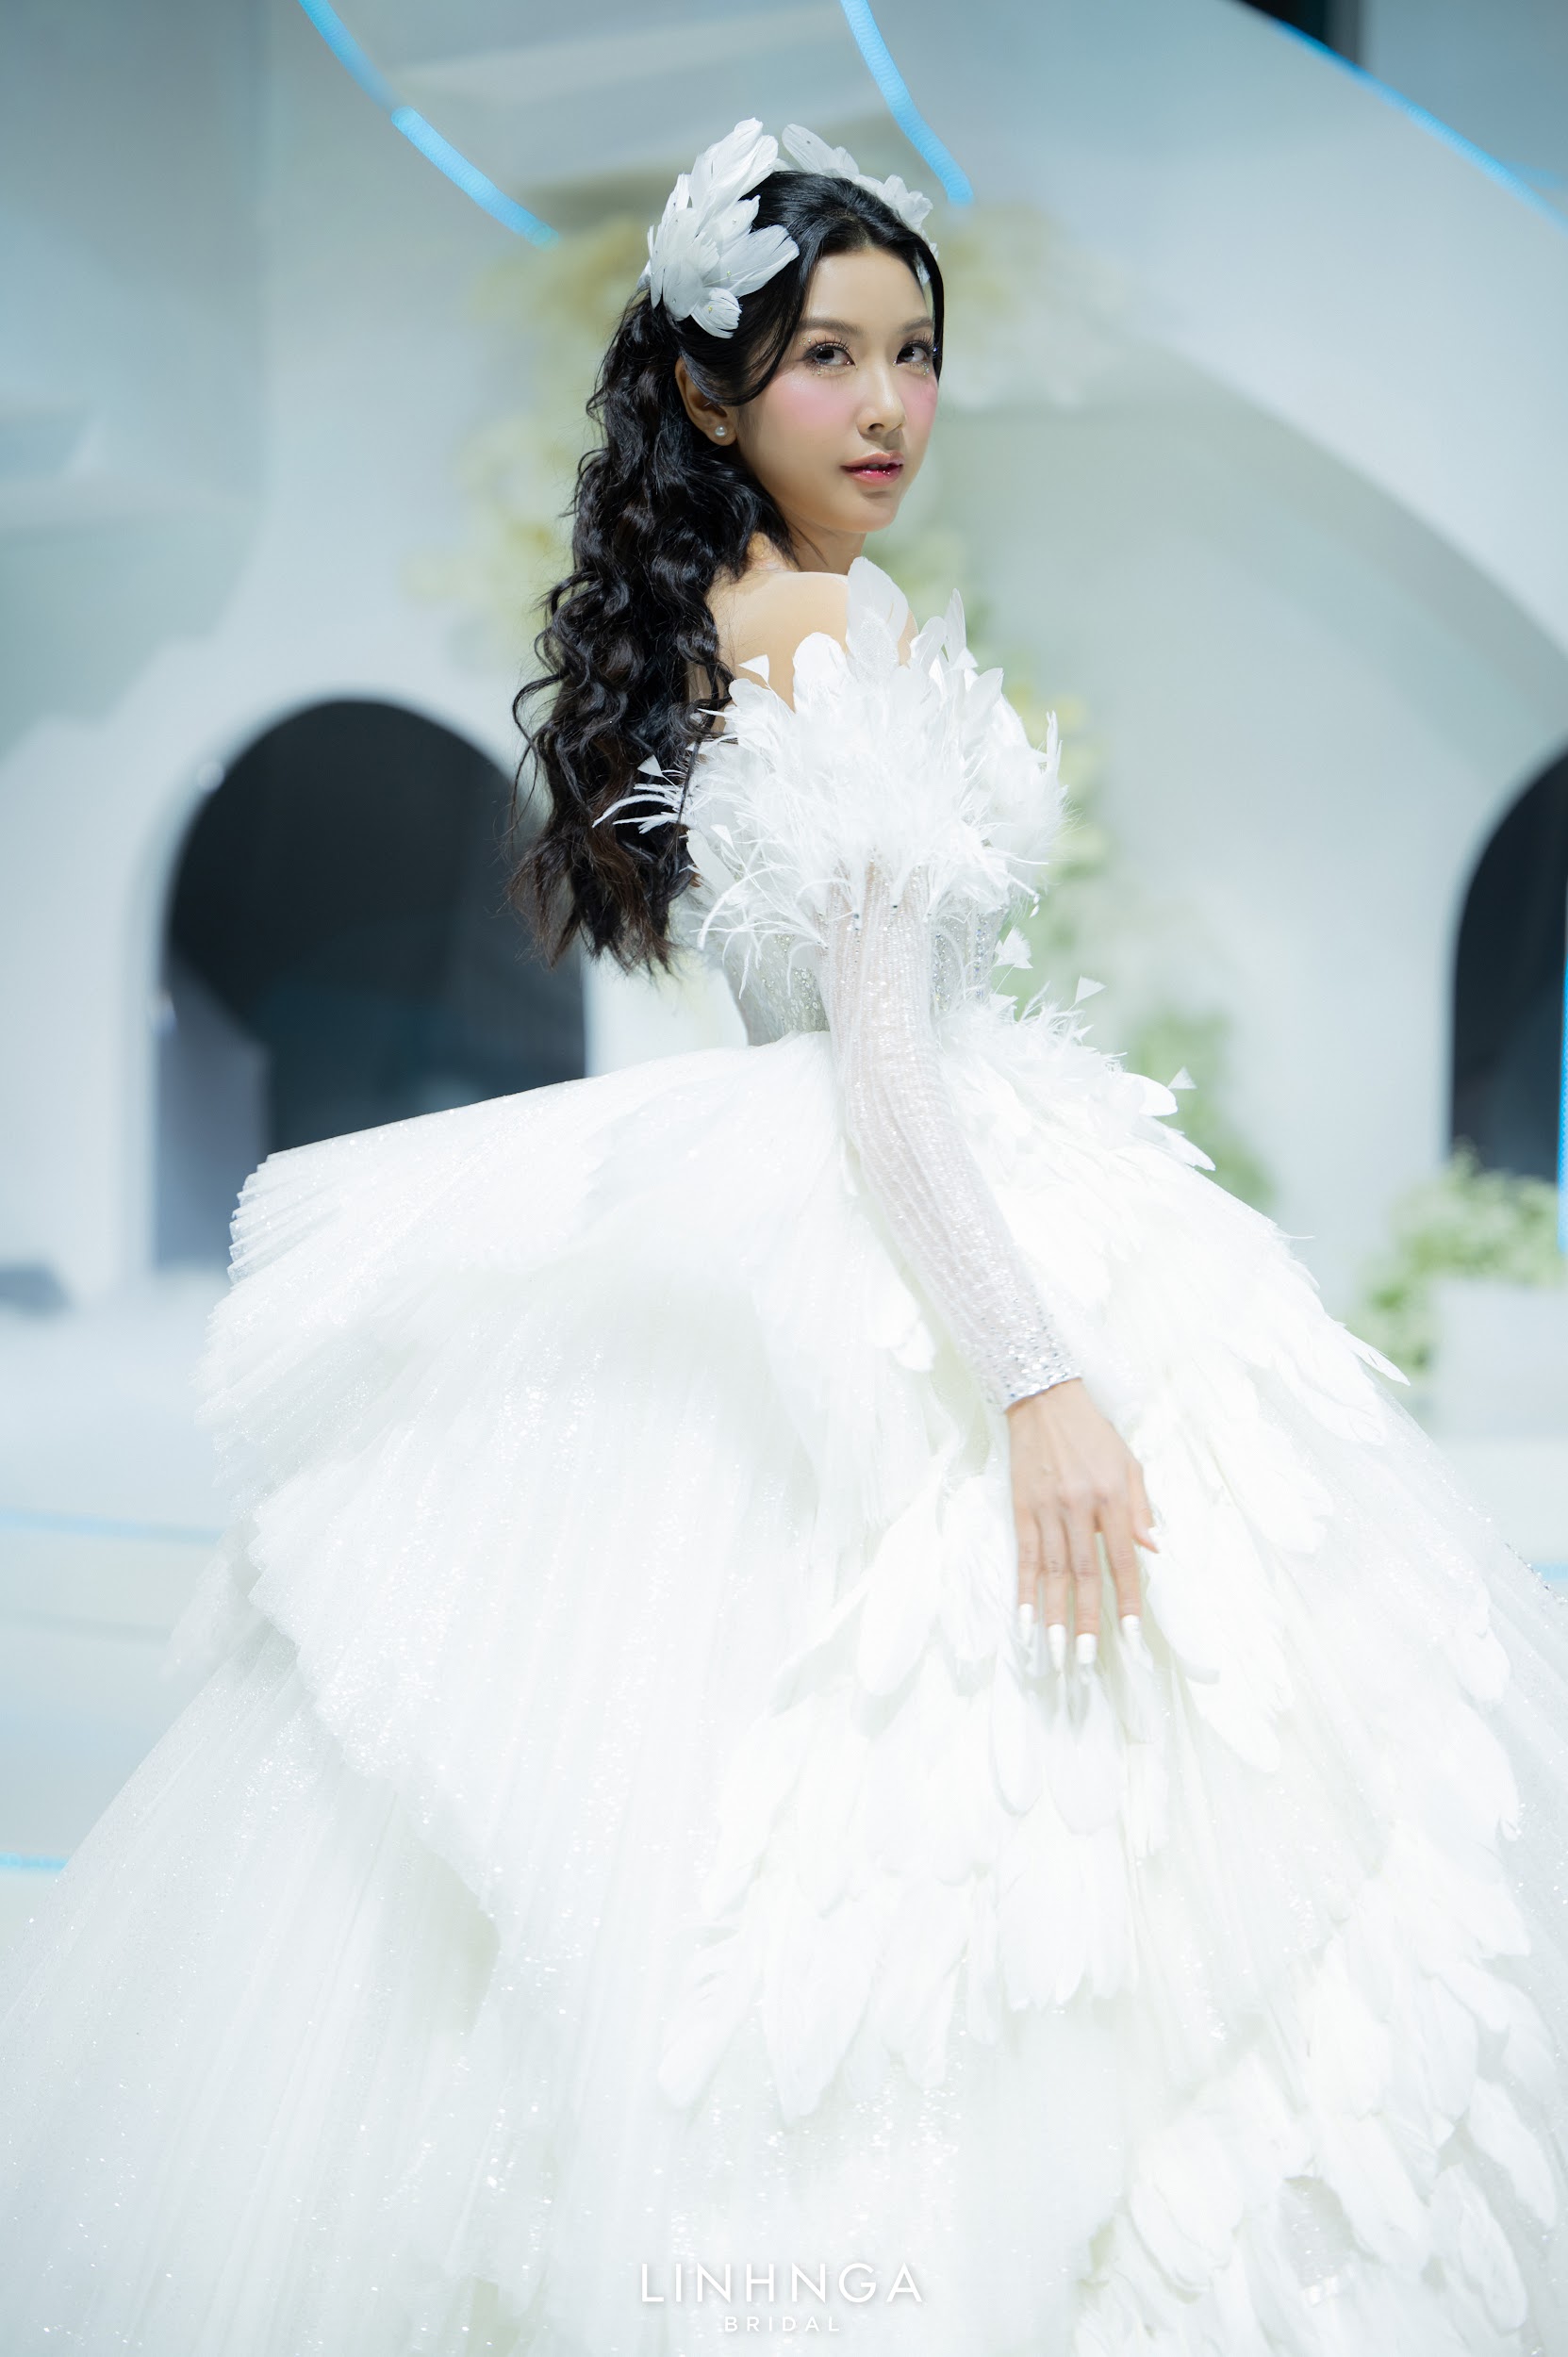 Hậu sinh nhật, Á hậu Thảo Nhi Lê hoá nữ hoàng lộng lẫy trở thành First Face cho show diễn thời trang cưới - ảnh 4